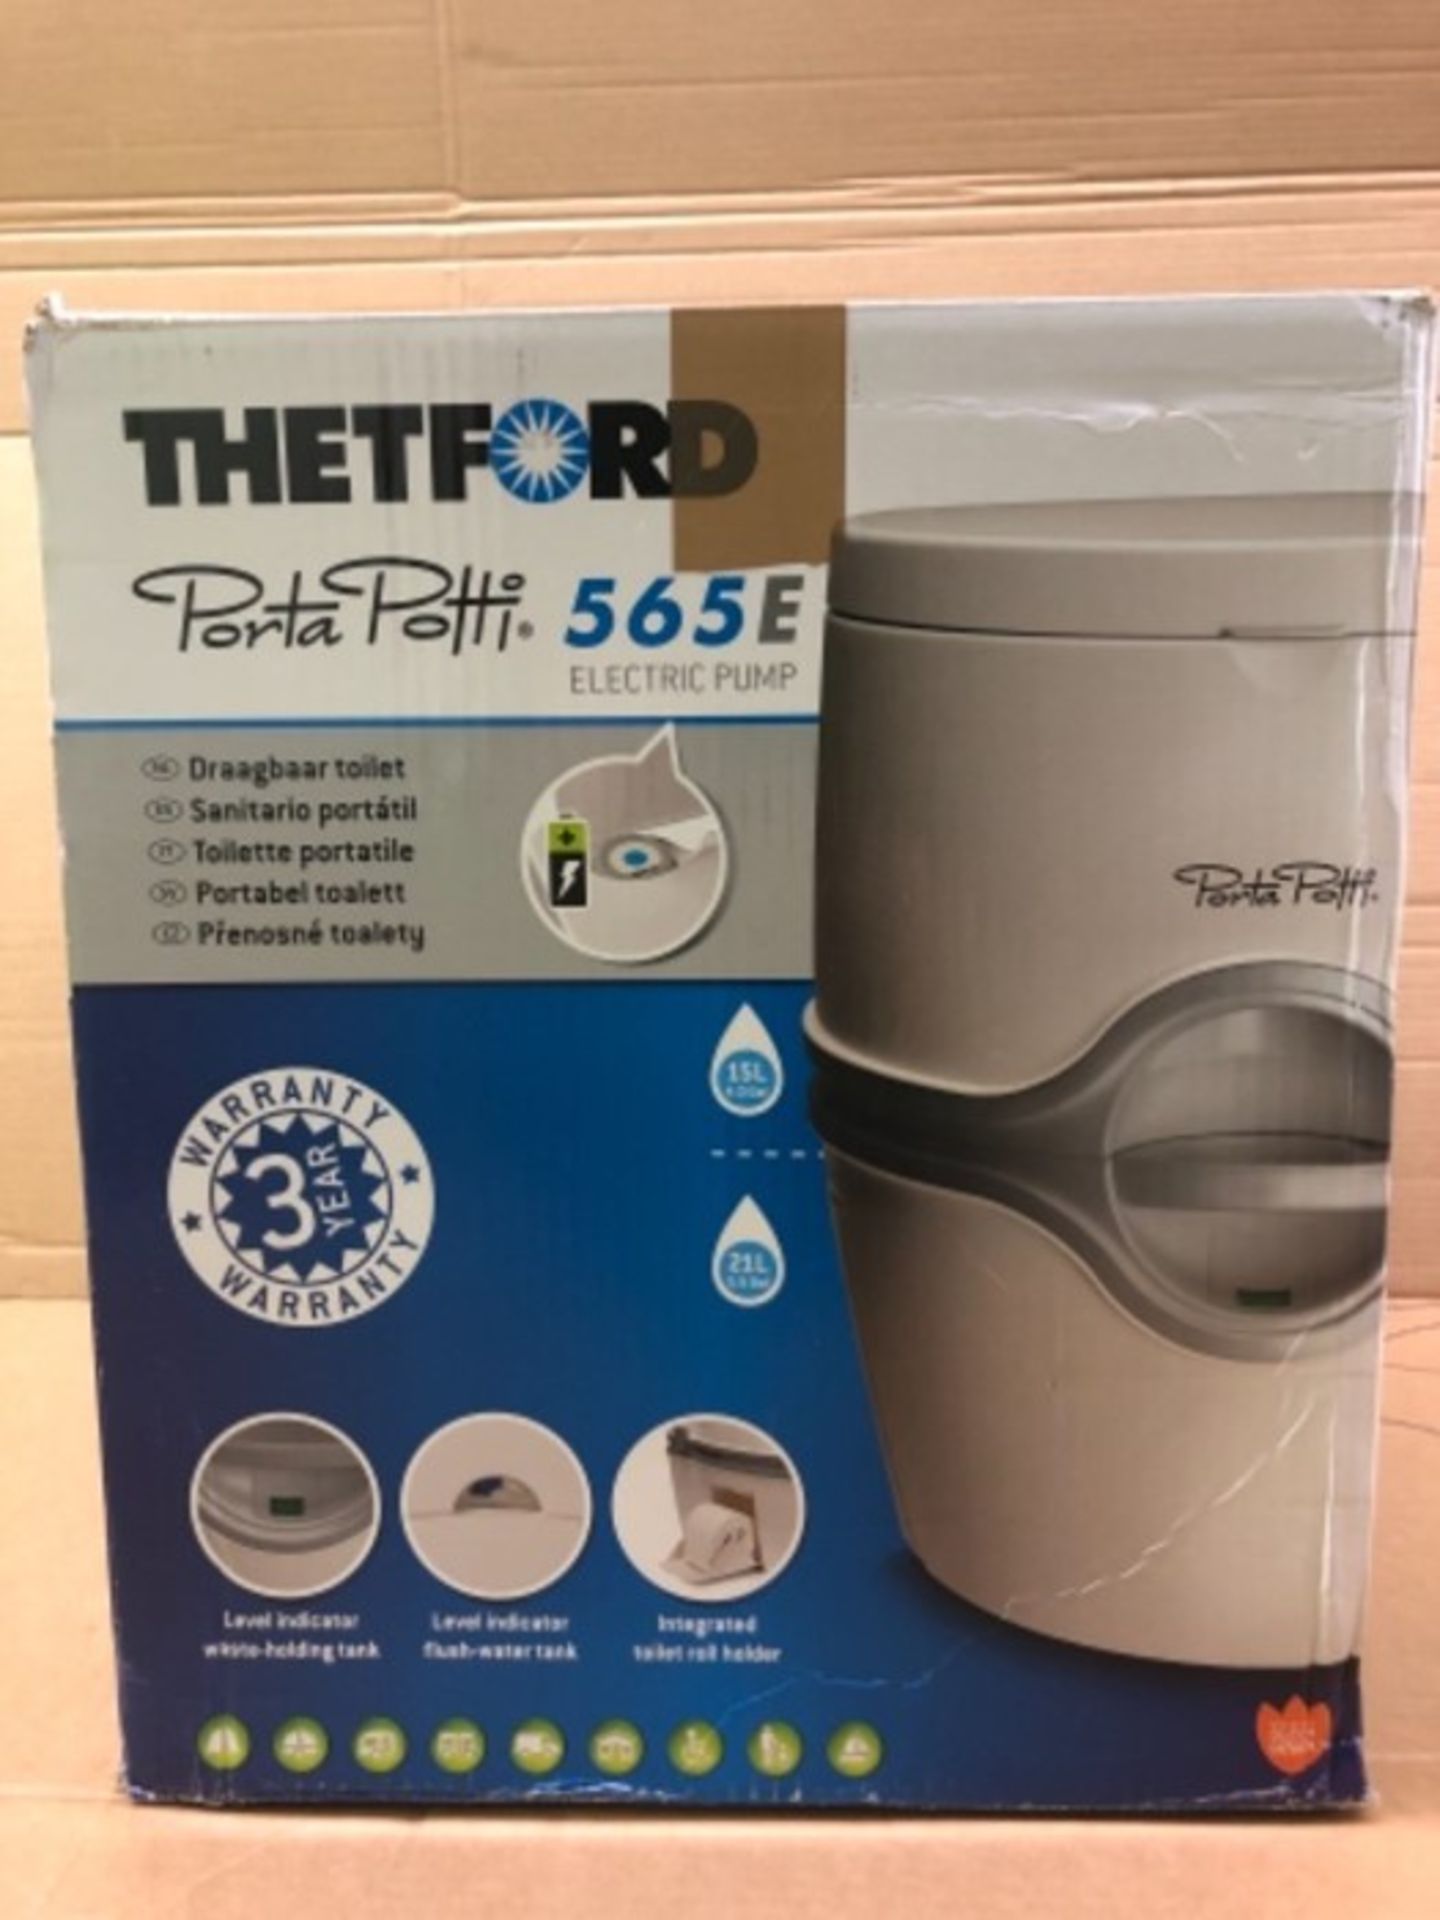 RRP £163.00 Thetford 92306 Porta Potti 565E (Electric) Portable Toilet, White-Grey, 448 x 388 x 45 - Image 2 of 3